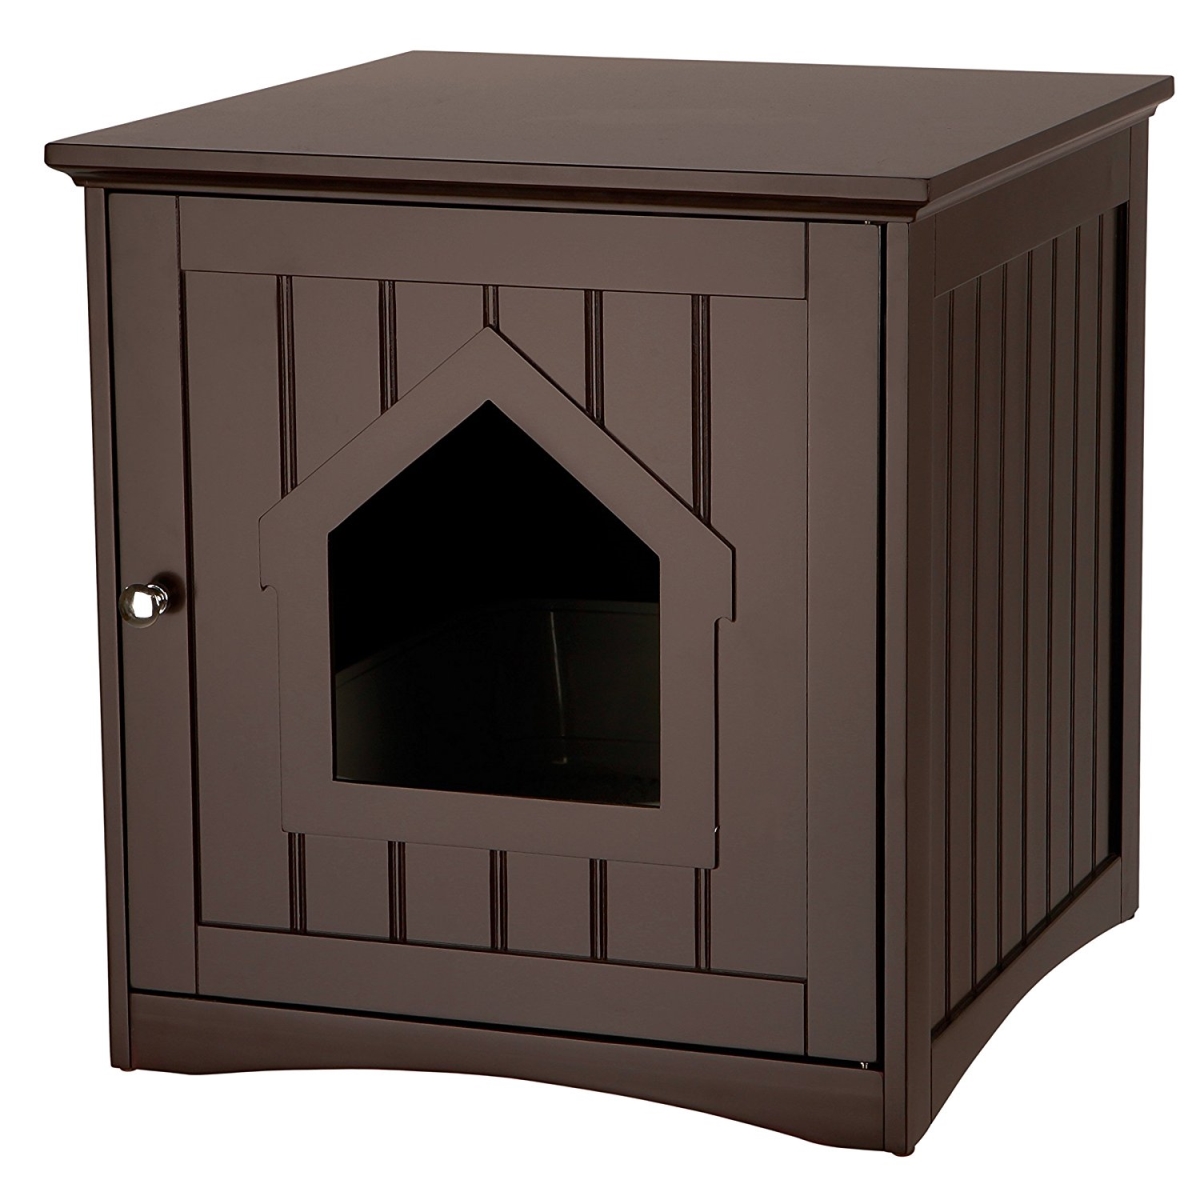 Wooden Cat Home & Litter Box, Brown